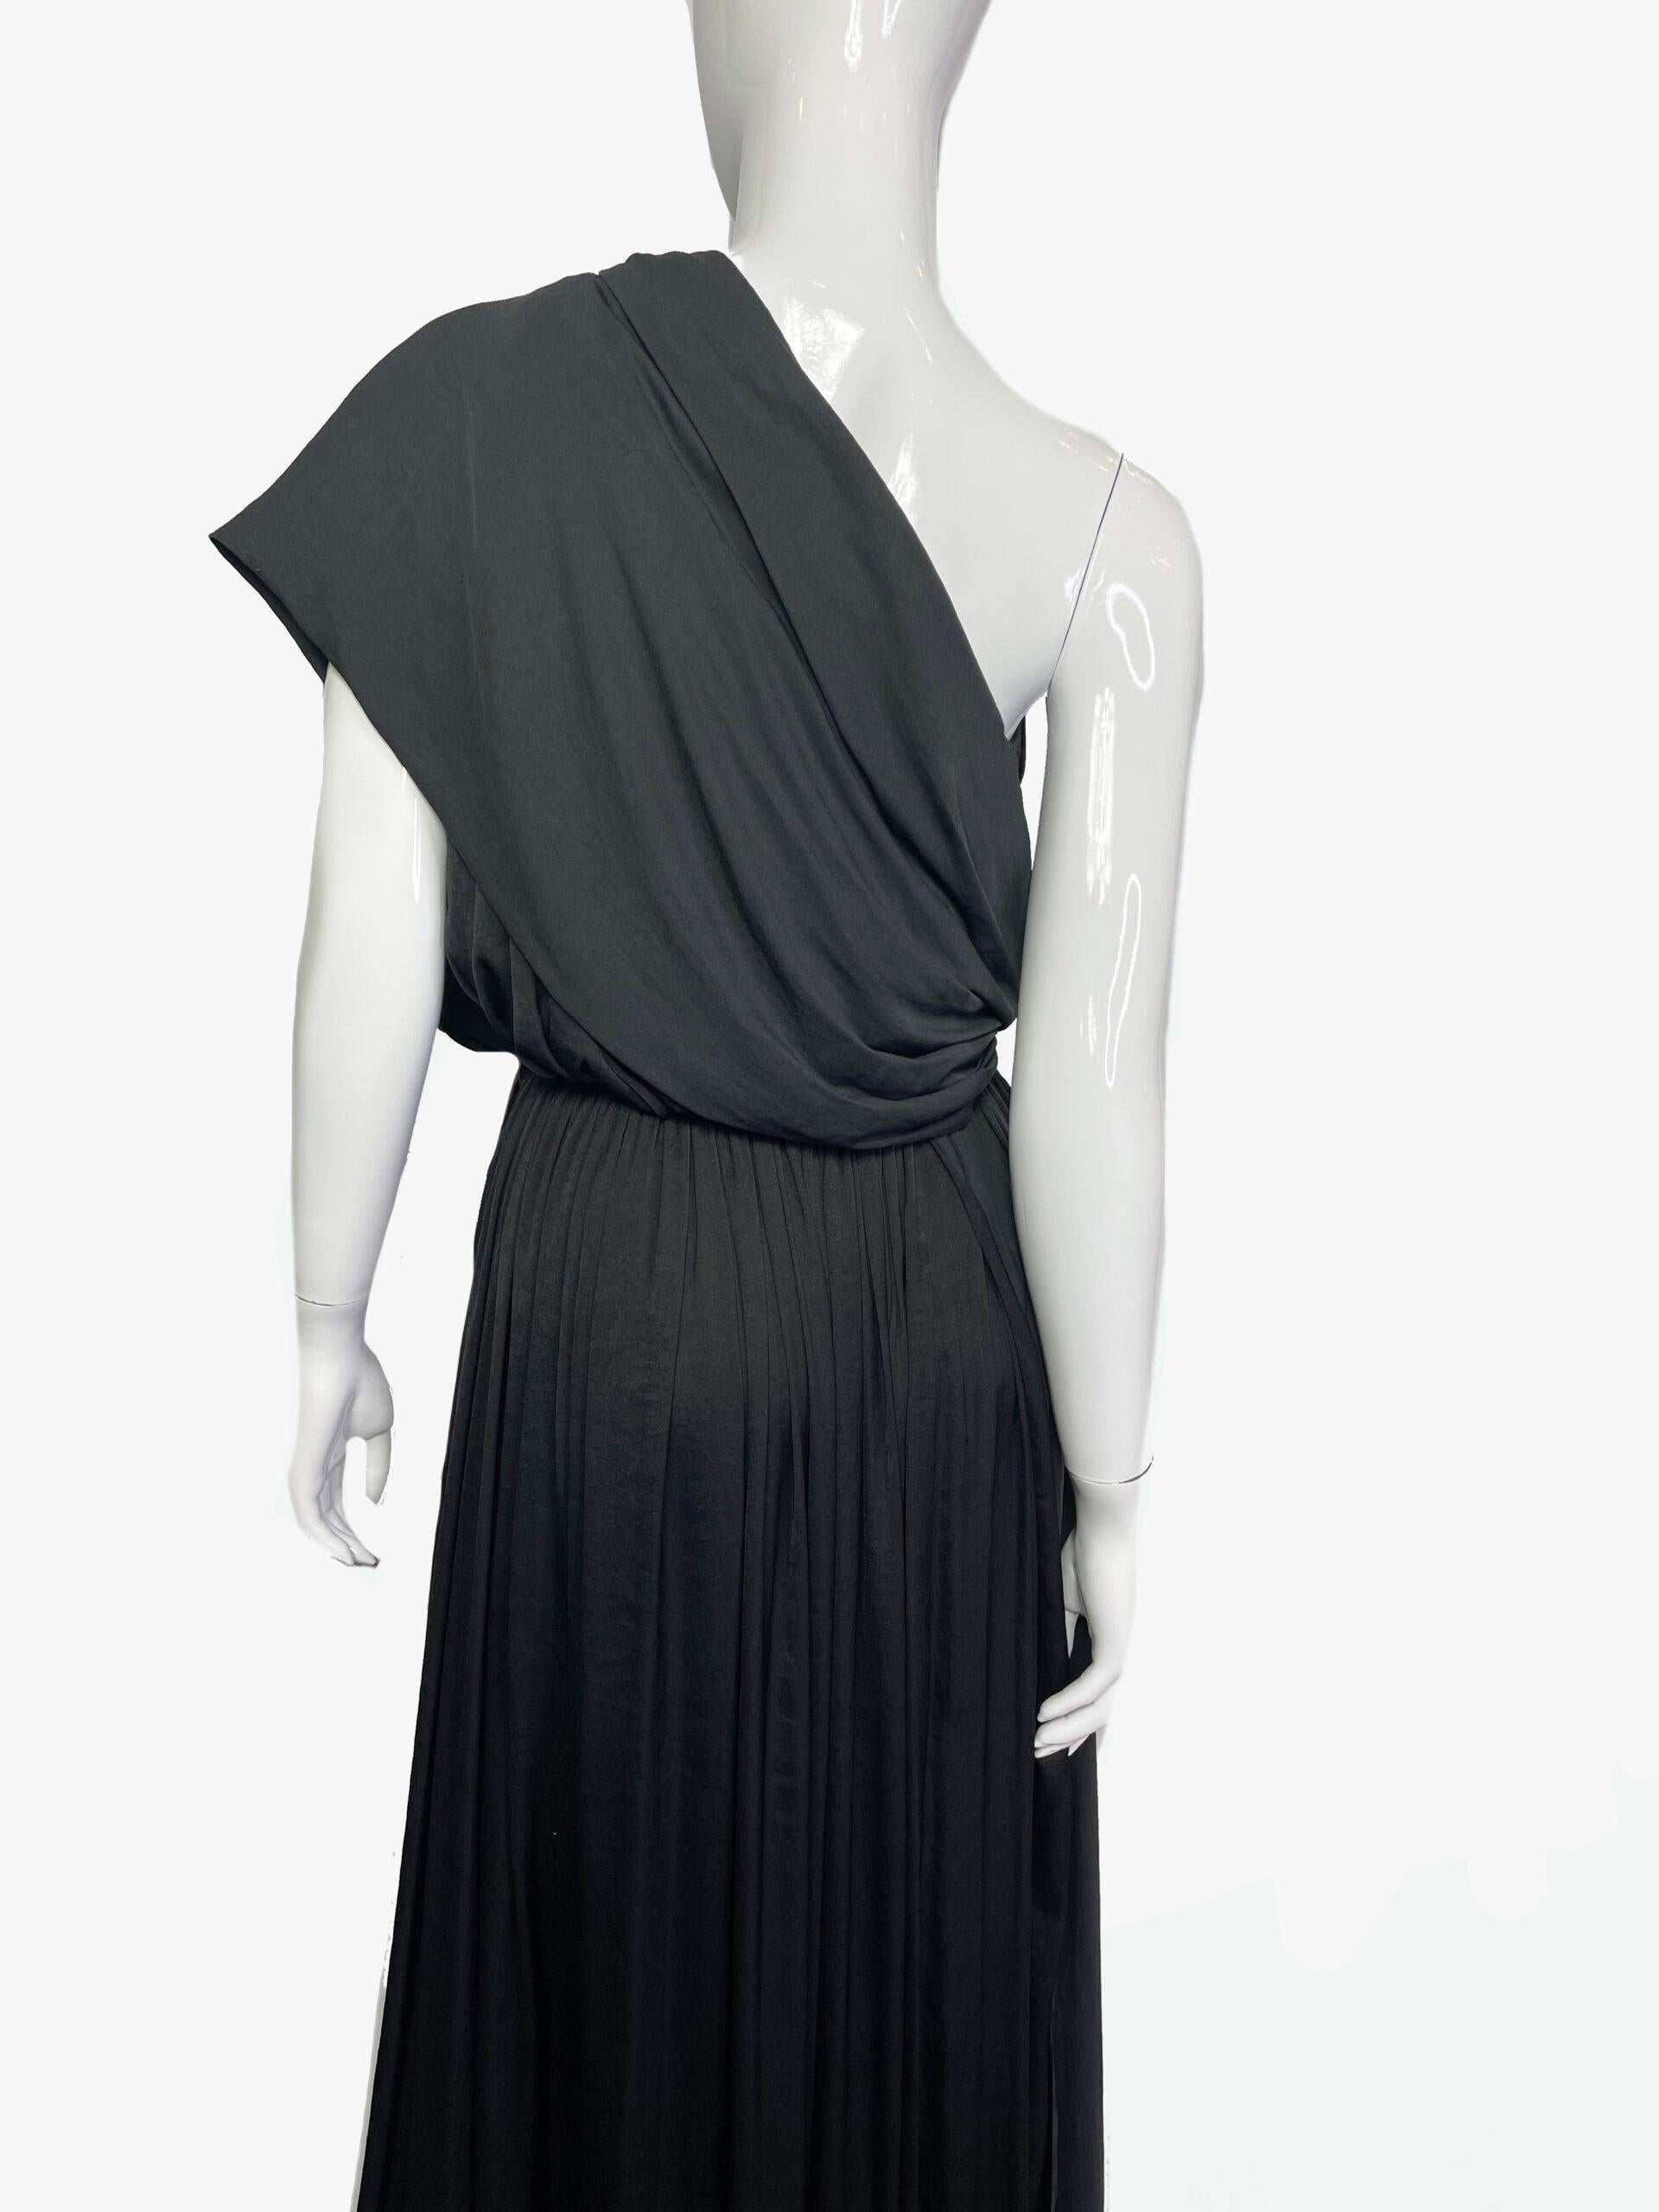 Lanvin One-shoulder Dress, 2011 For Sale 1